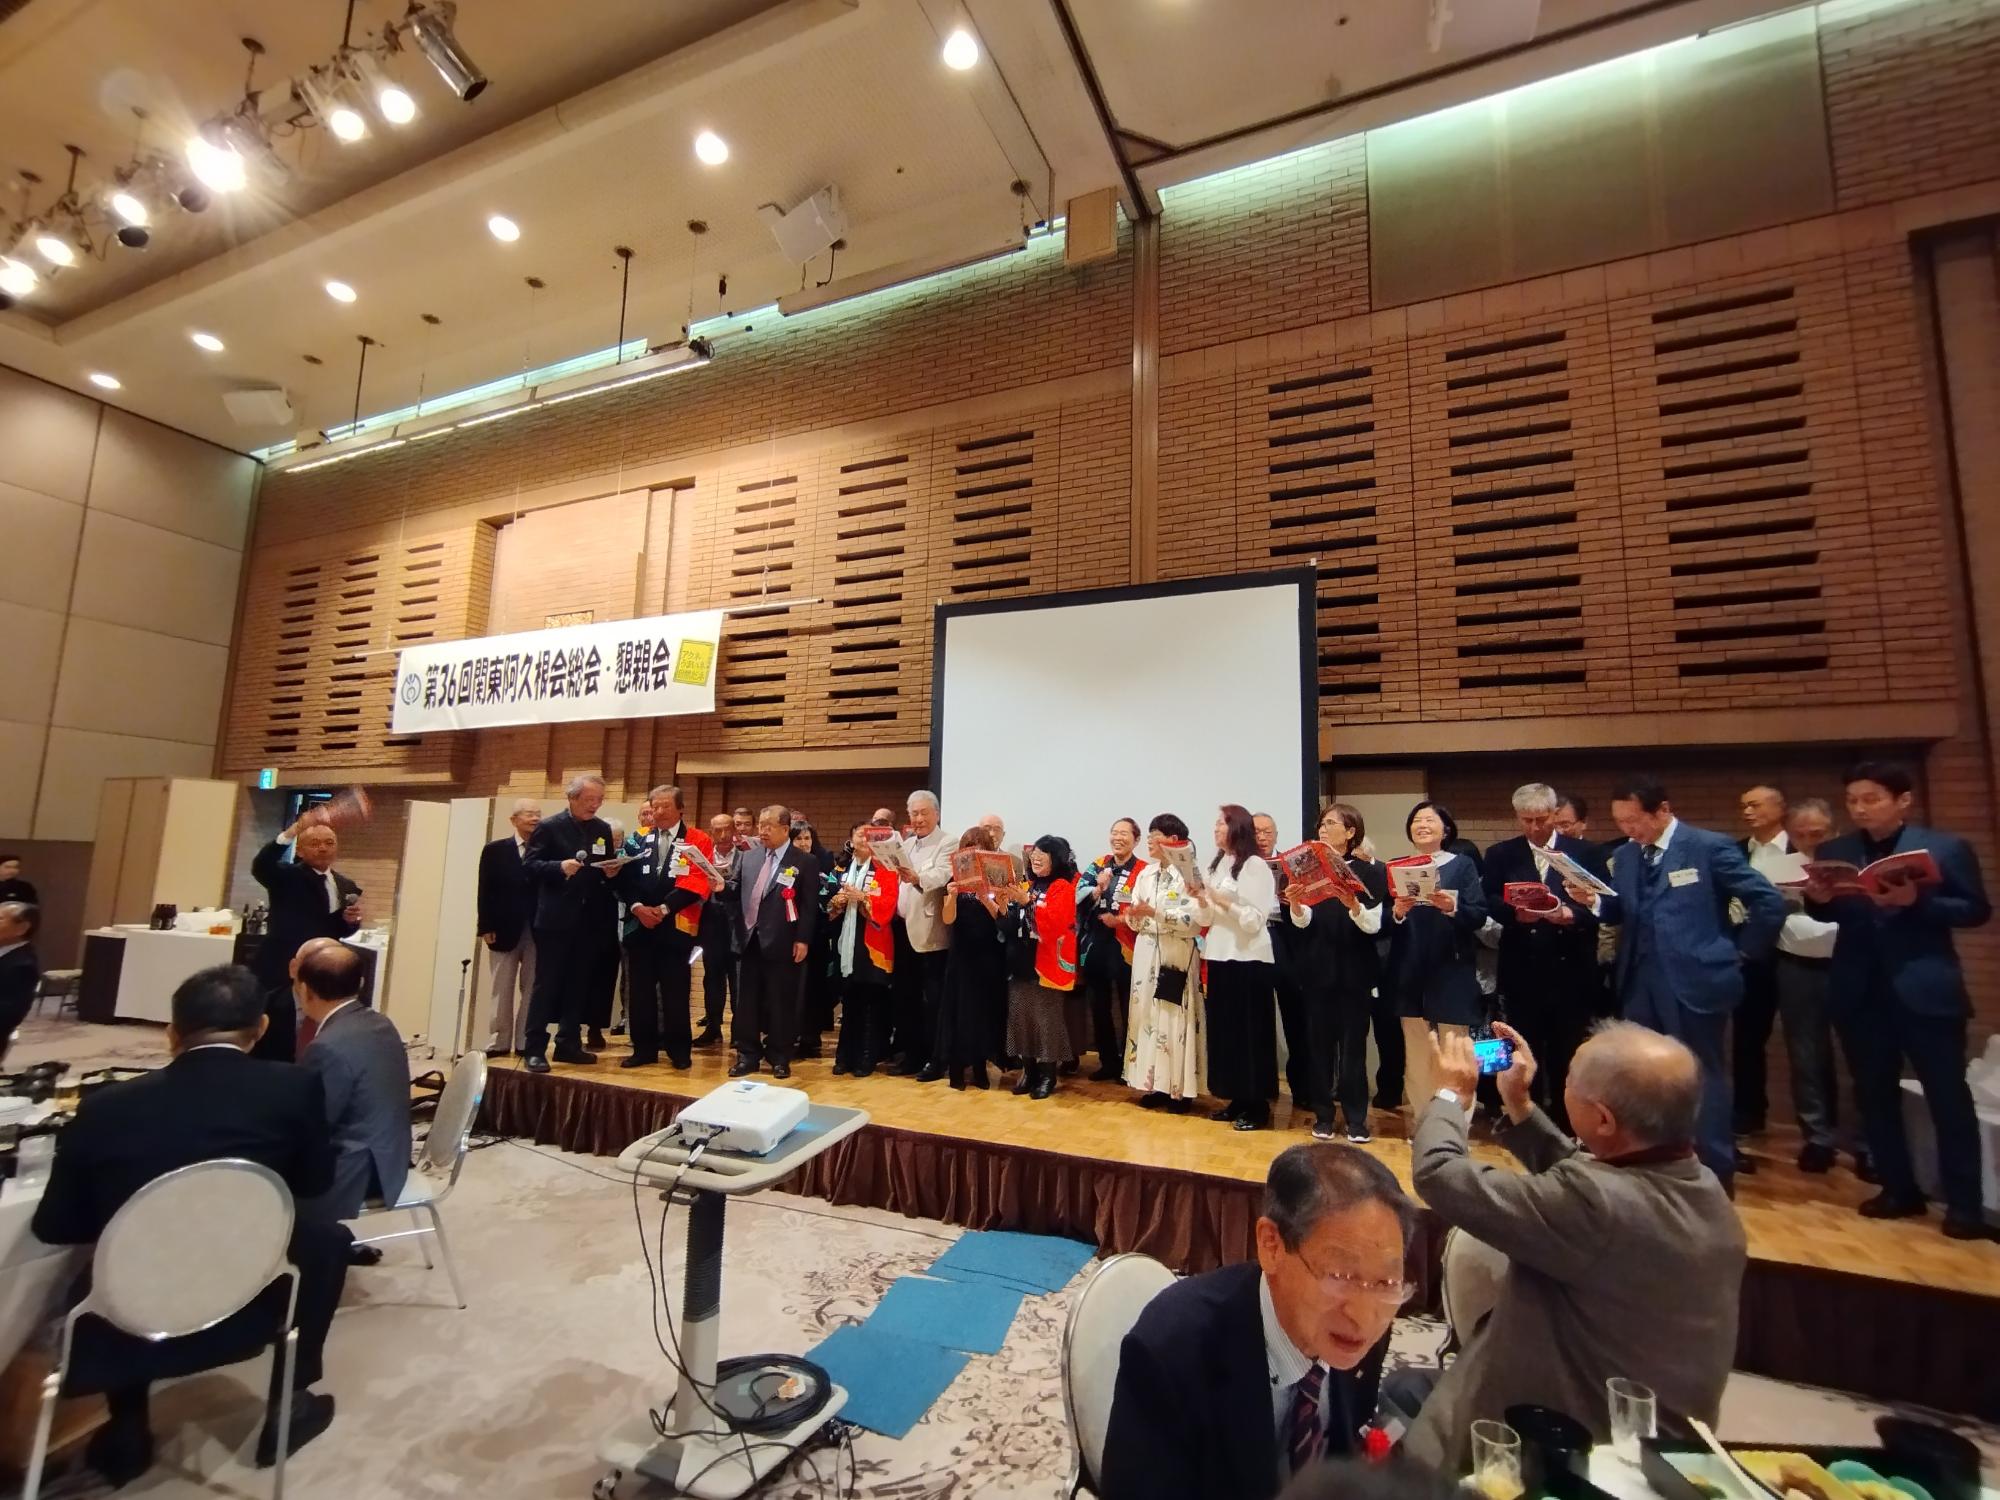 関東阿久根会総会・懇親会において小学校の校歌を合唱する参加者